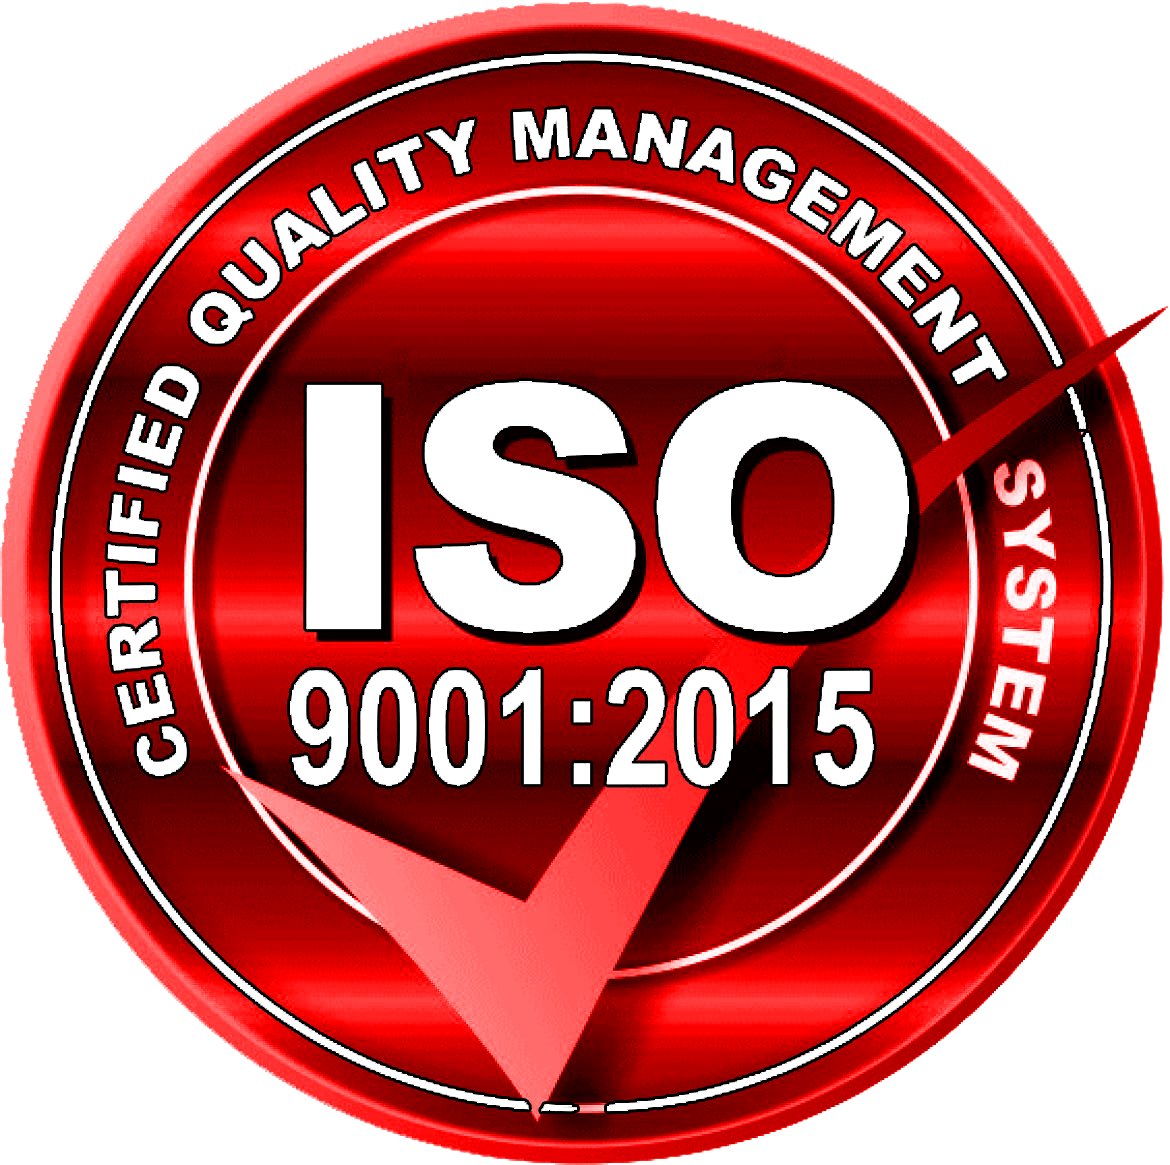 обладаем сертификатом качества ISO 9001:2015